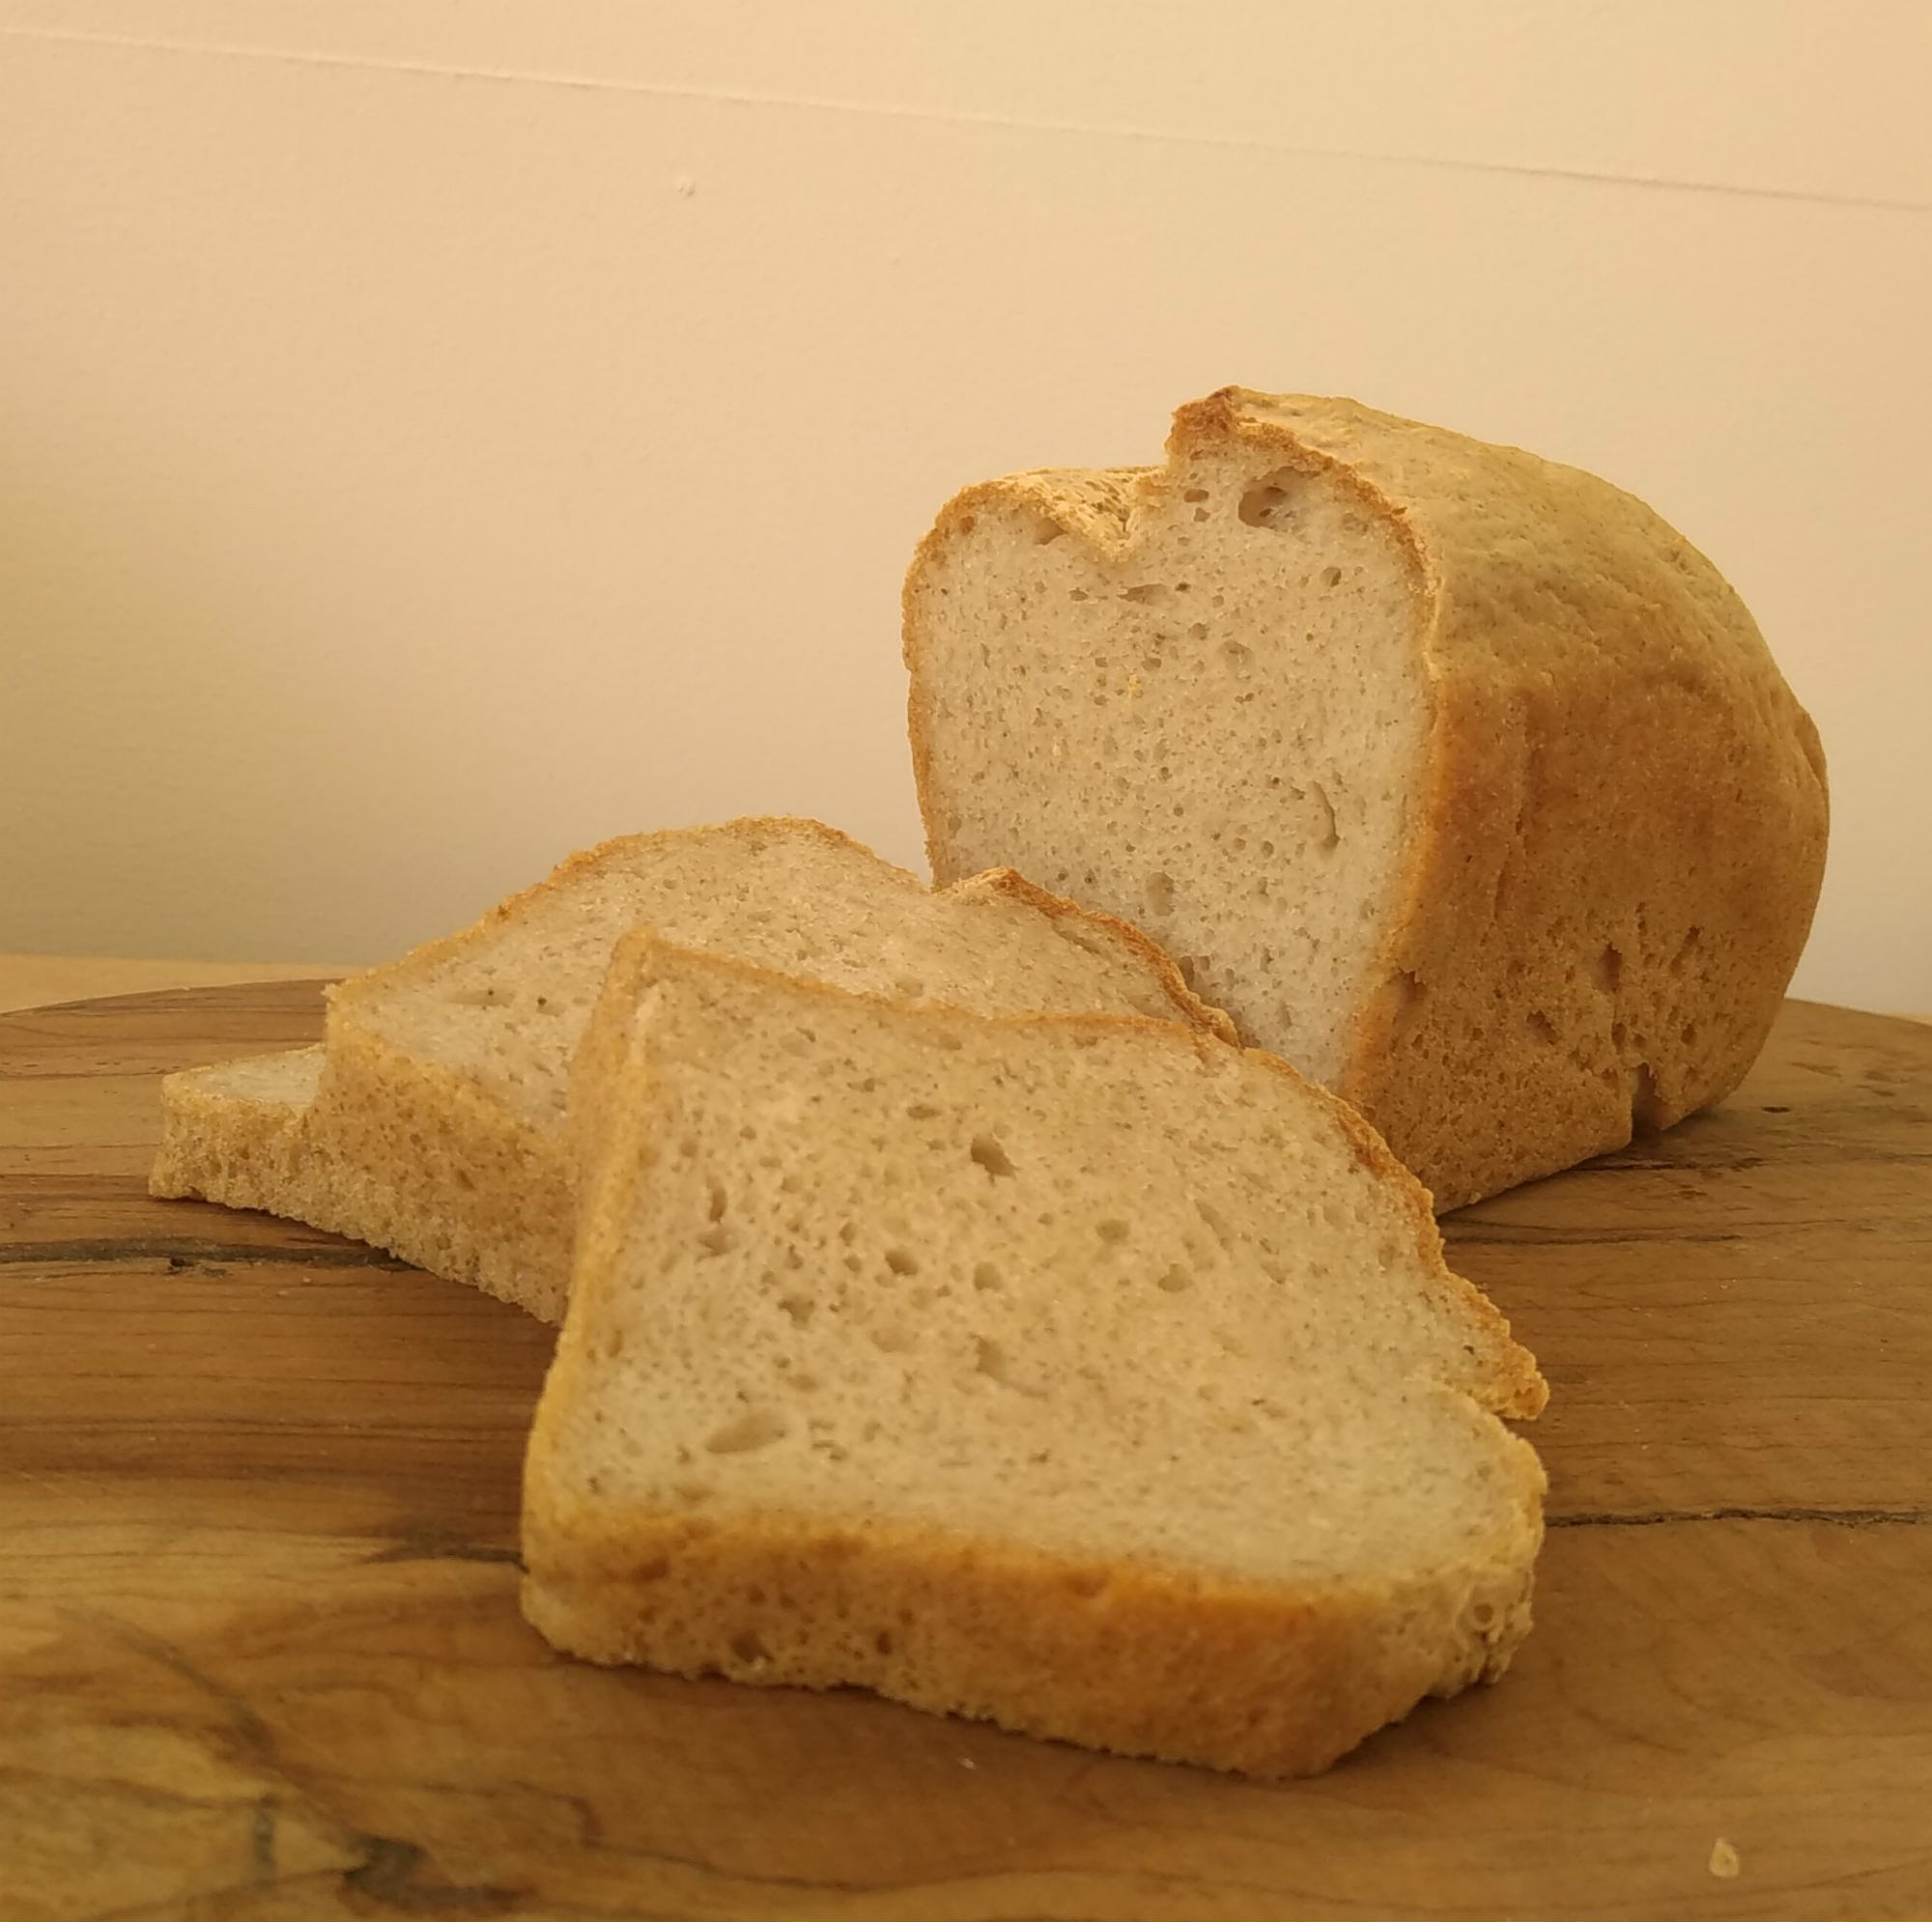 Vente en ligne pain levain Boulangerie St-Girons livraison pain frais